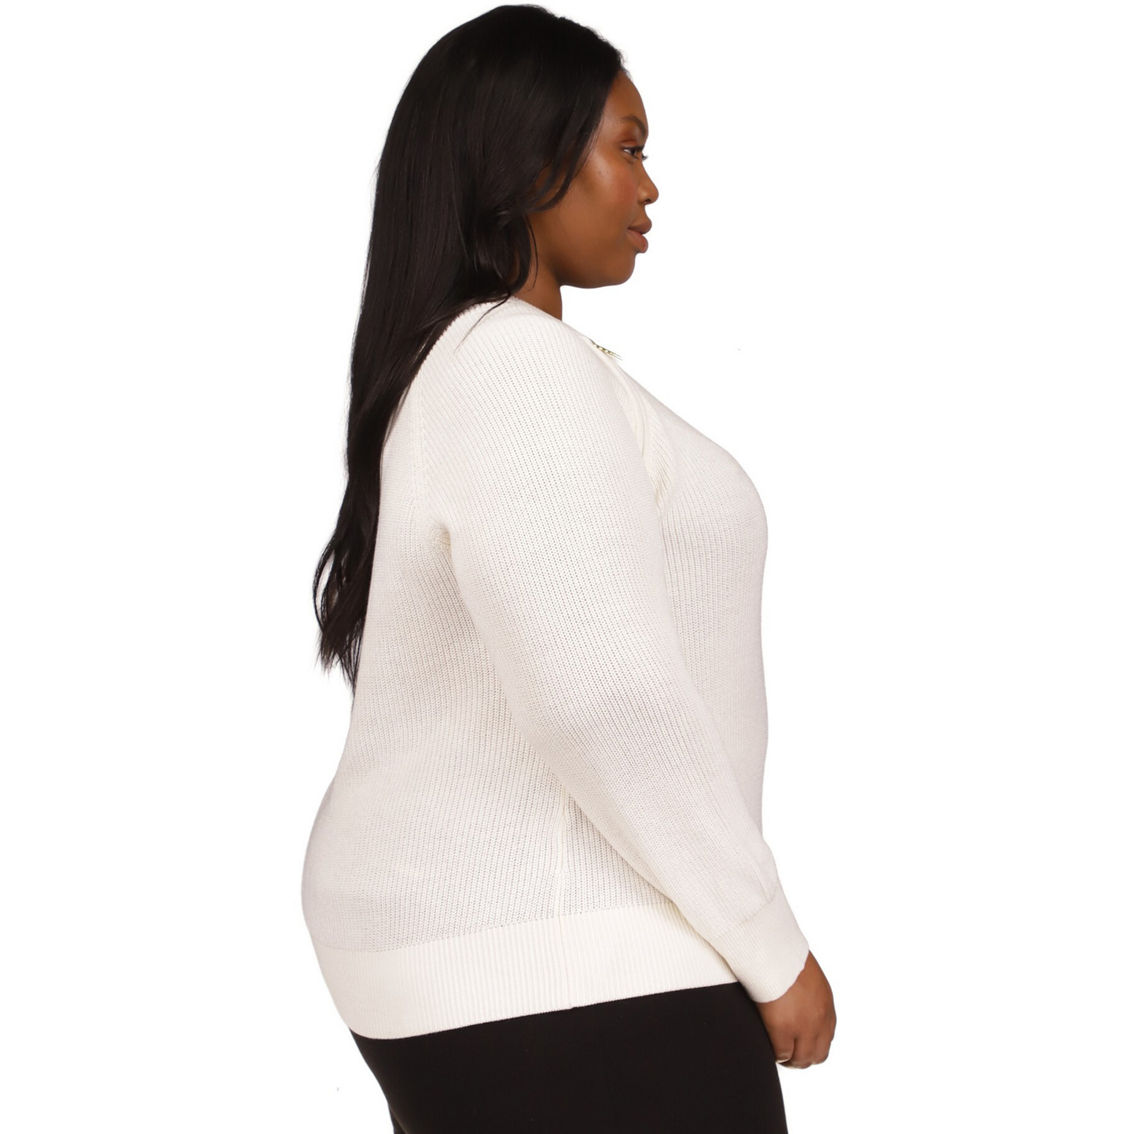 Michael Kors Plus Size Crop Shaker Zip Sweater - Image 3 of 4